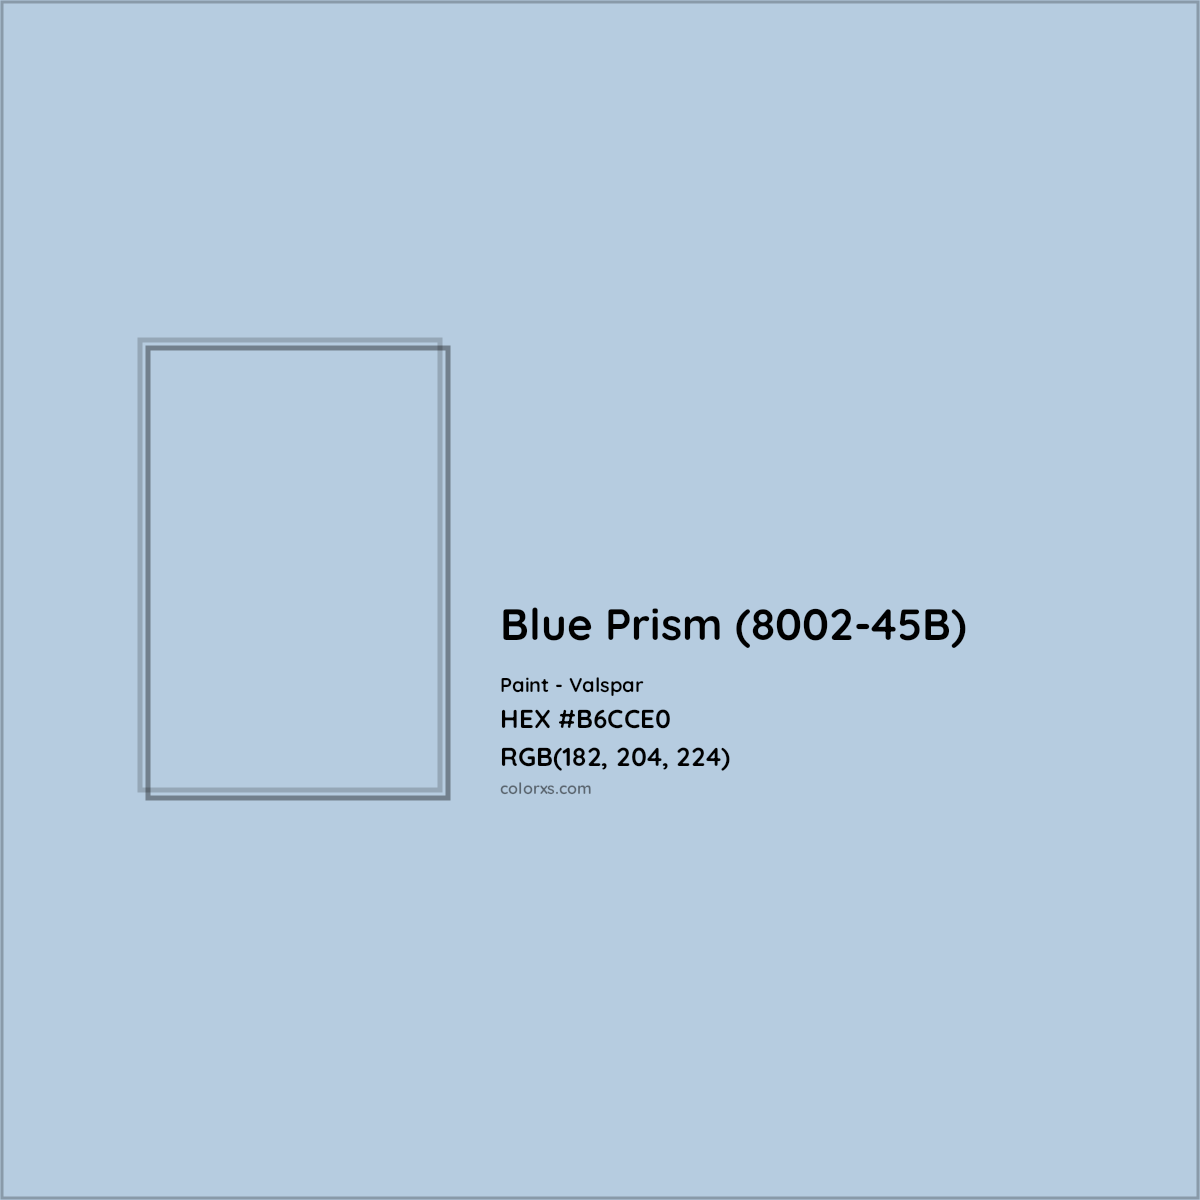 HEX #B6CCE0 Blue Prism (8002-45B) Paint Valspar - Color Code